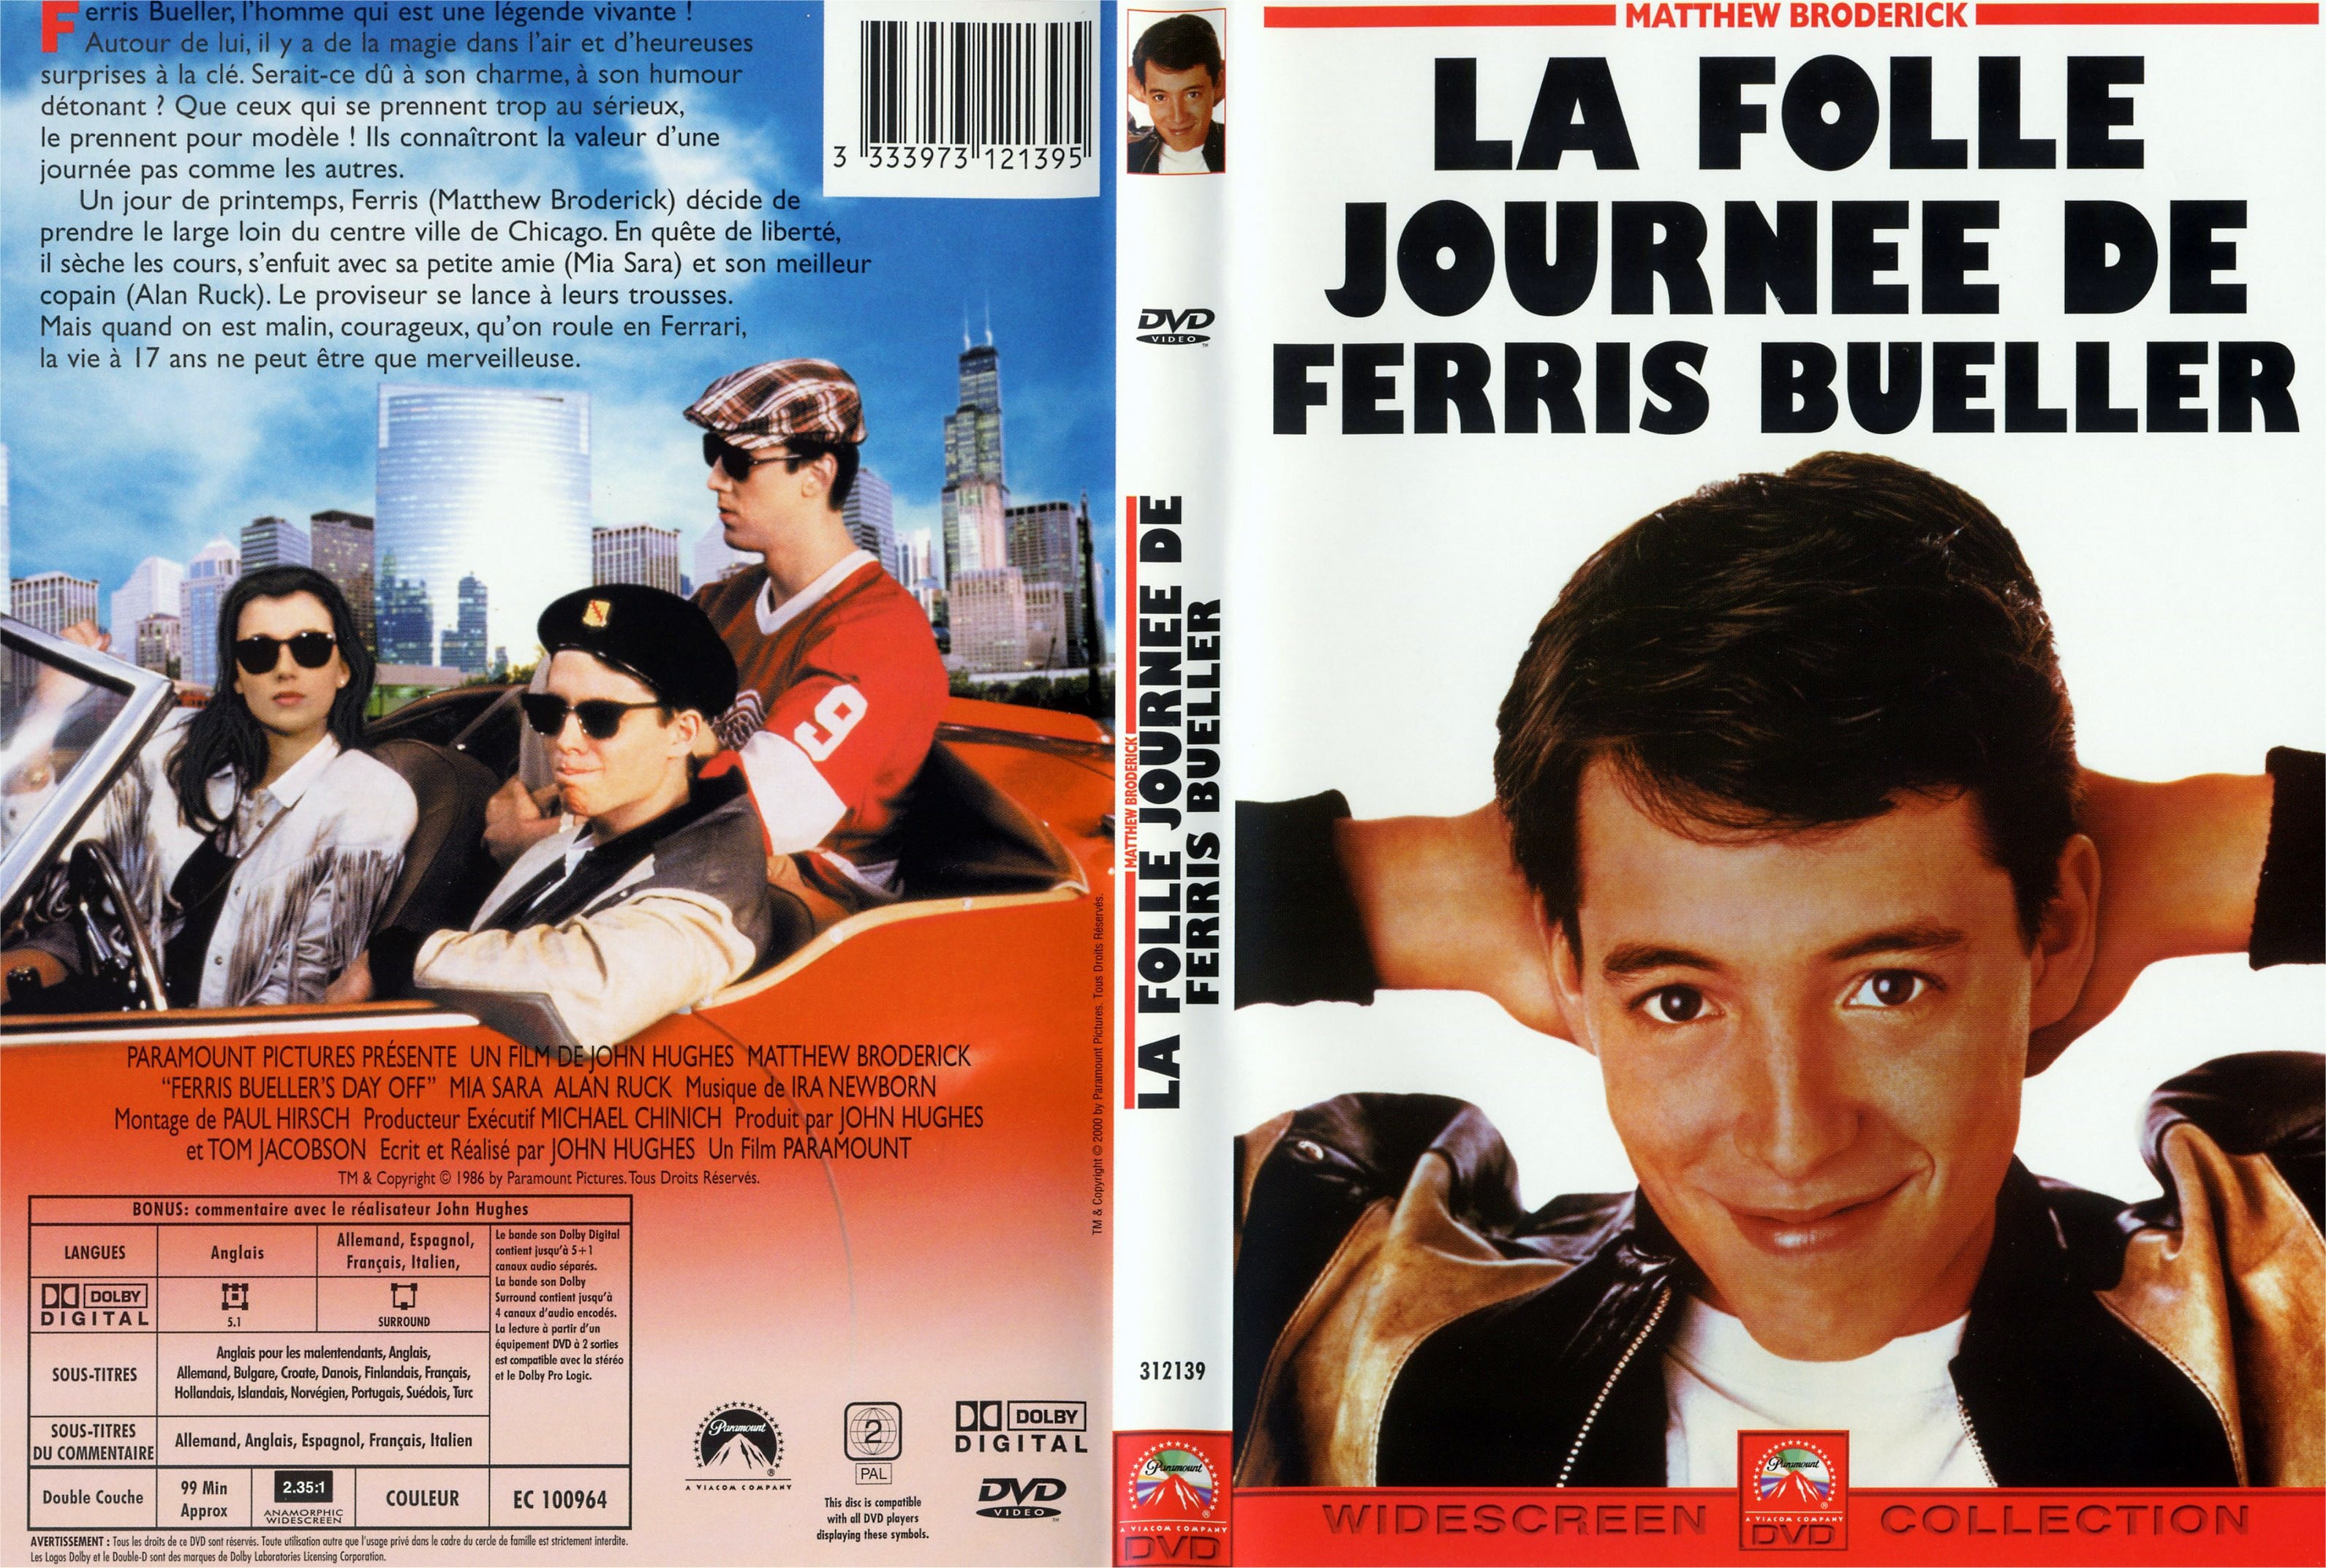 Jaquette DVD La folle journee de Ferris Bueller